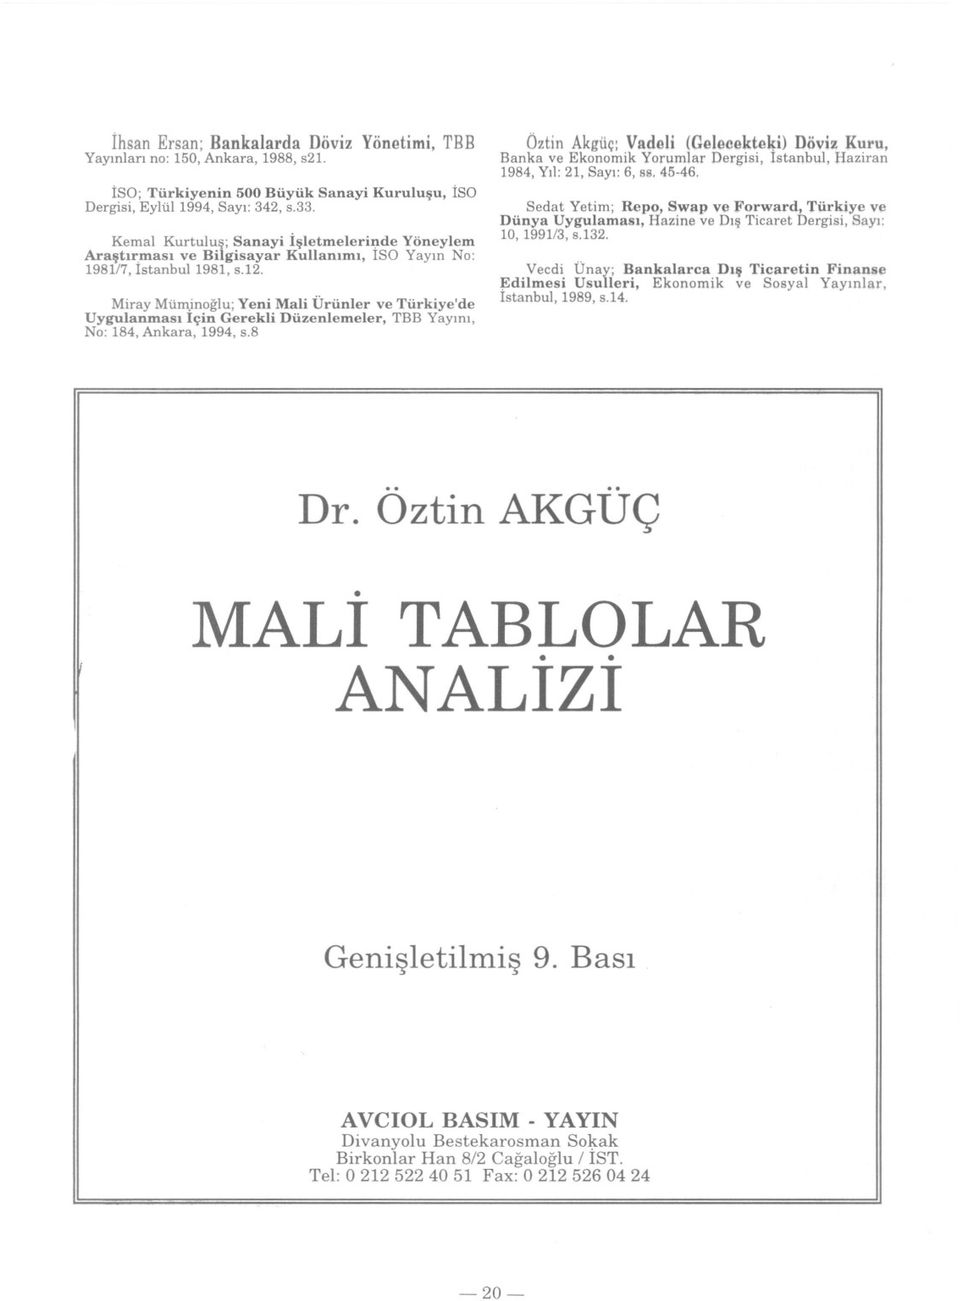 inoglu;Yeni Mali Ürünler ve Türkiye'de Uygulanmasi Için Gerekli Düzenlemeler, TBB Yayini, No: 184, Ankara, 1994, s.